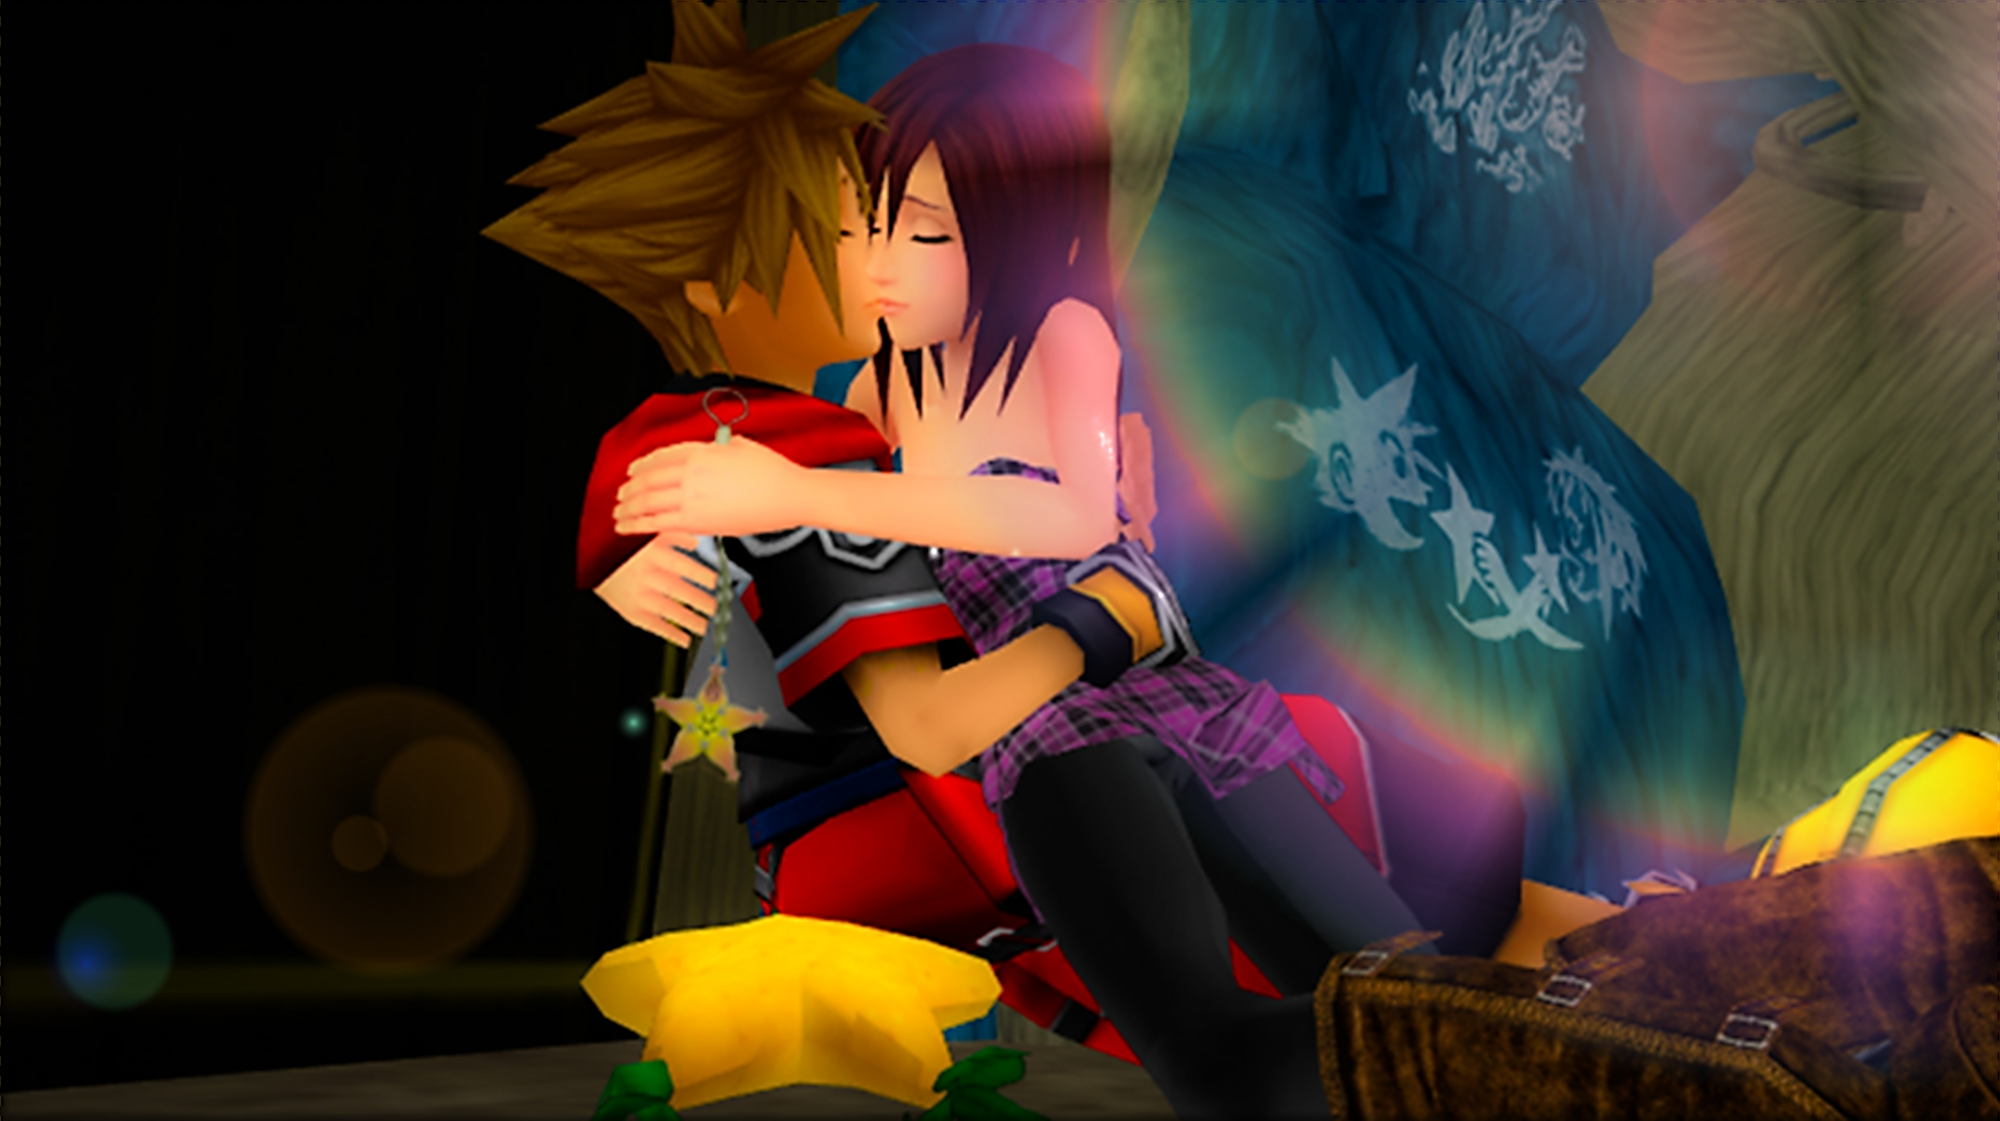 Сора Kingdom Hearts the SIMS 4. Kingdom Hearts Сора и Кайри. Kingdom Hearts поцелуй. Сора Kingdom Hearts-форма-форма. Pony sora